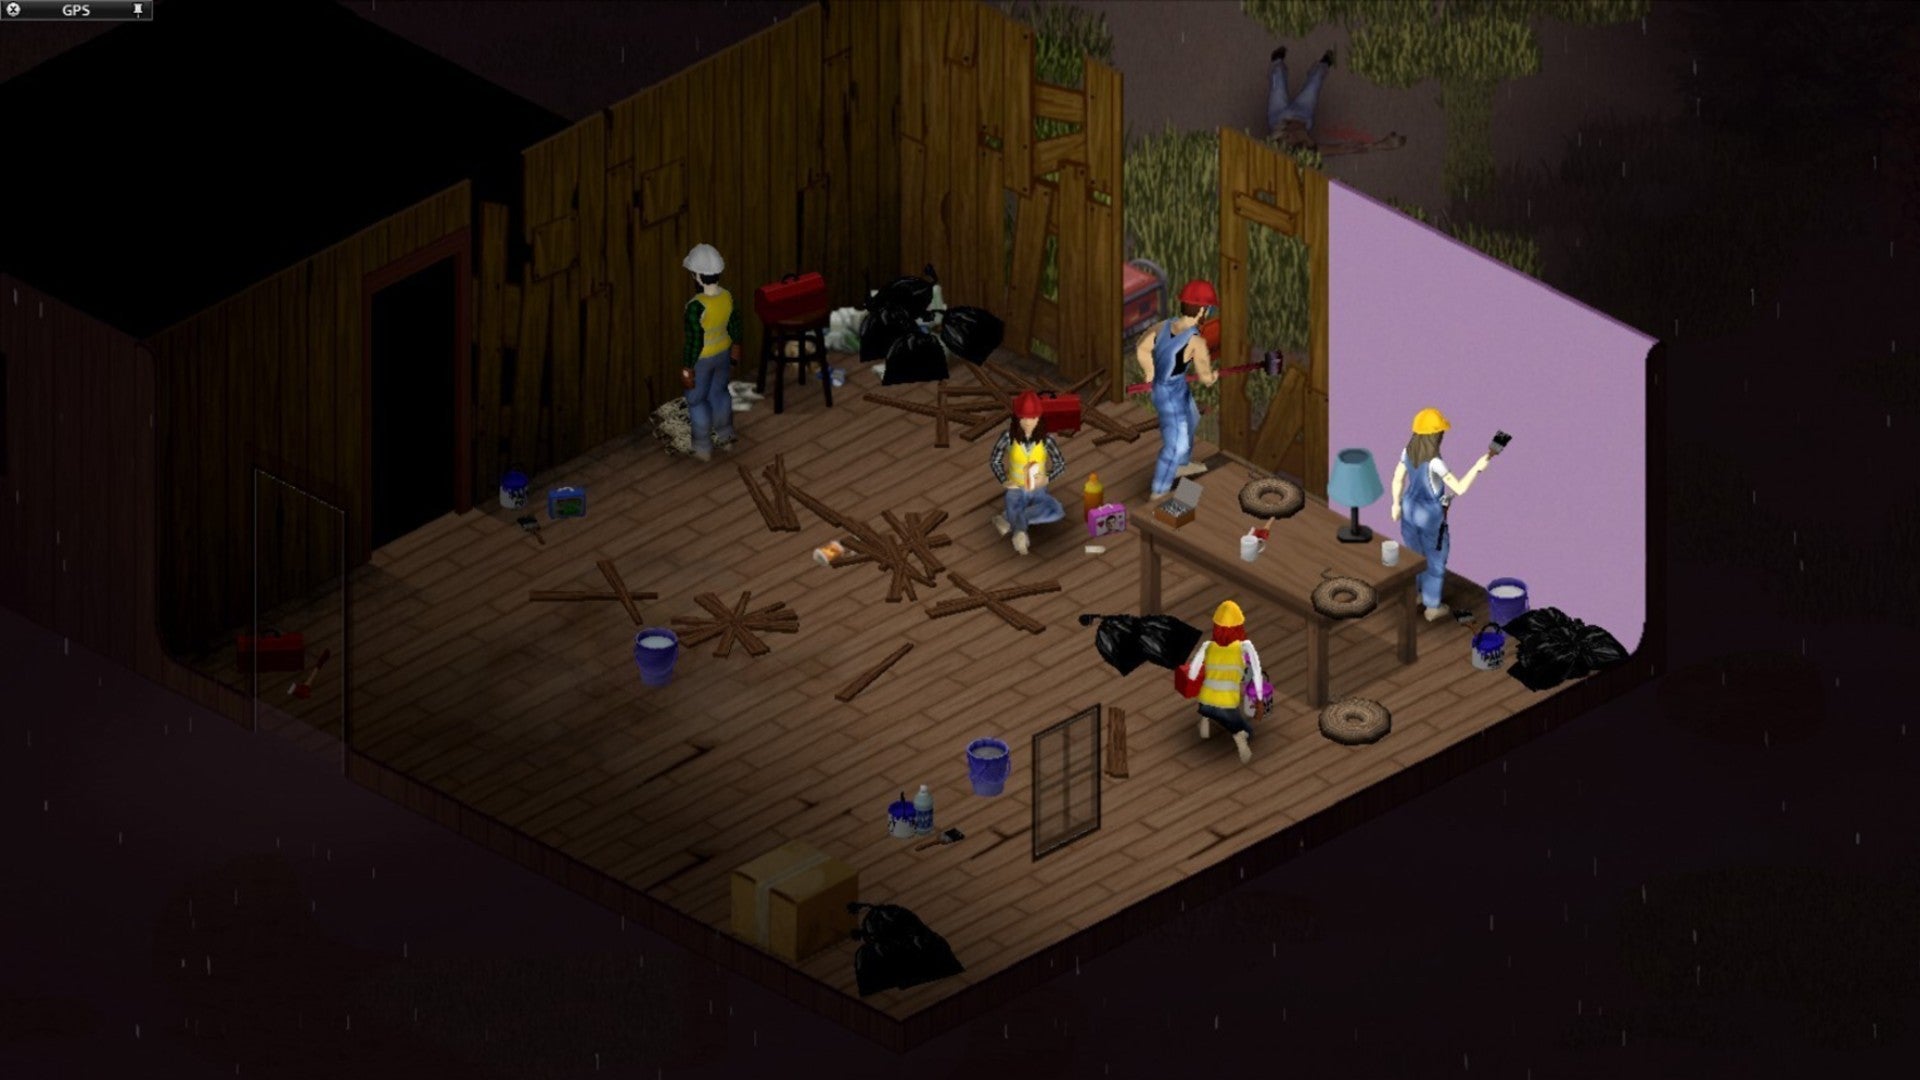 Игроки Project Zomboid объединяются, чтобы построить базу и покрасить стены.  Все в строительной одежде.